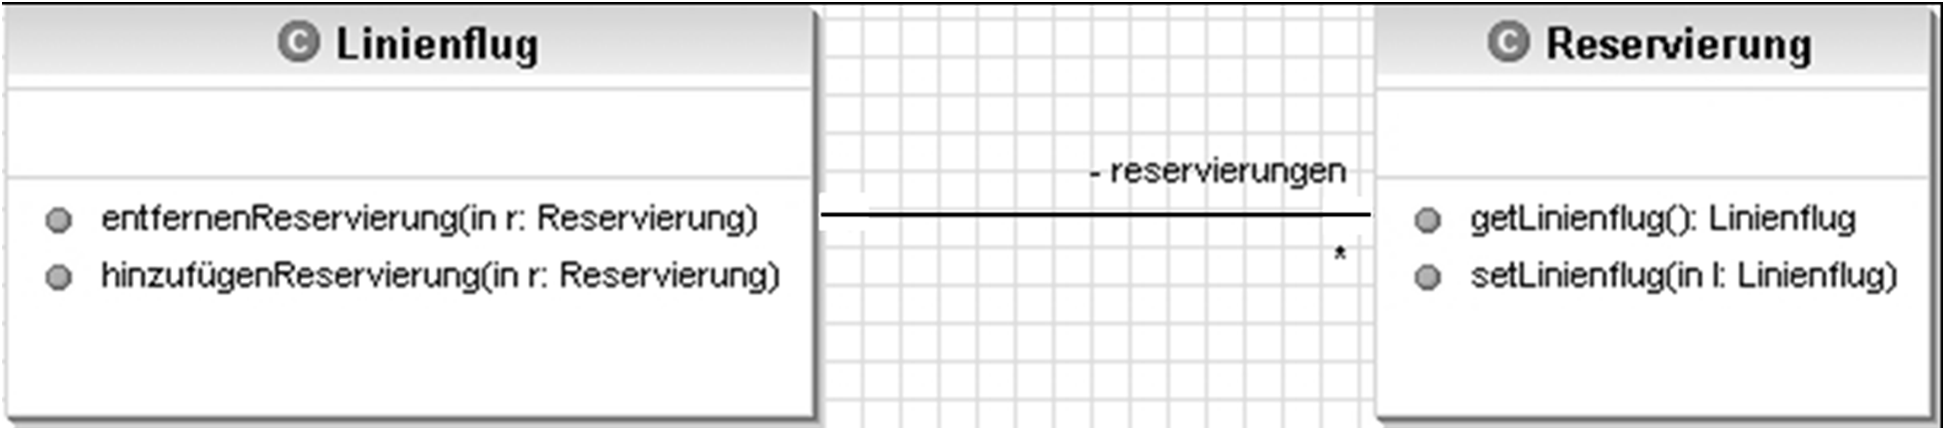 55 Umsetzung von Assoziationen am Beispiel einer 1:* -Assoziation public class Linienflug { private Vector<Reservierung> reservierungen = new Vector<Reservierung>(); public void